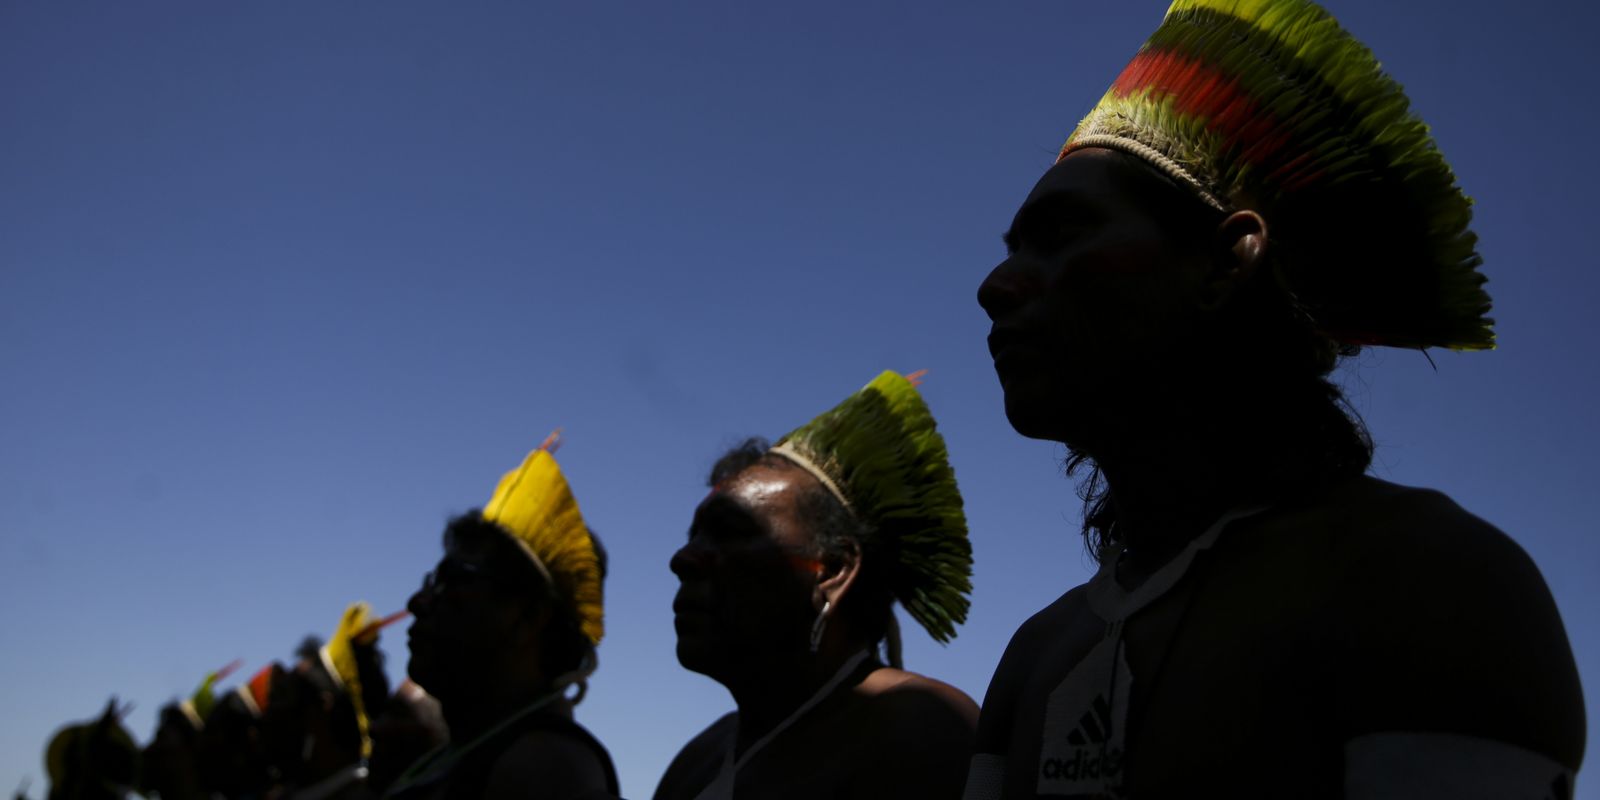 Indígenas protestam em Brasília contra marco temporal